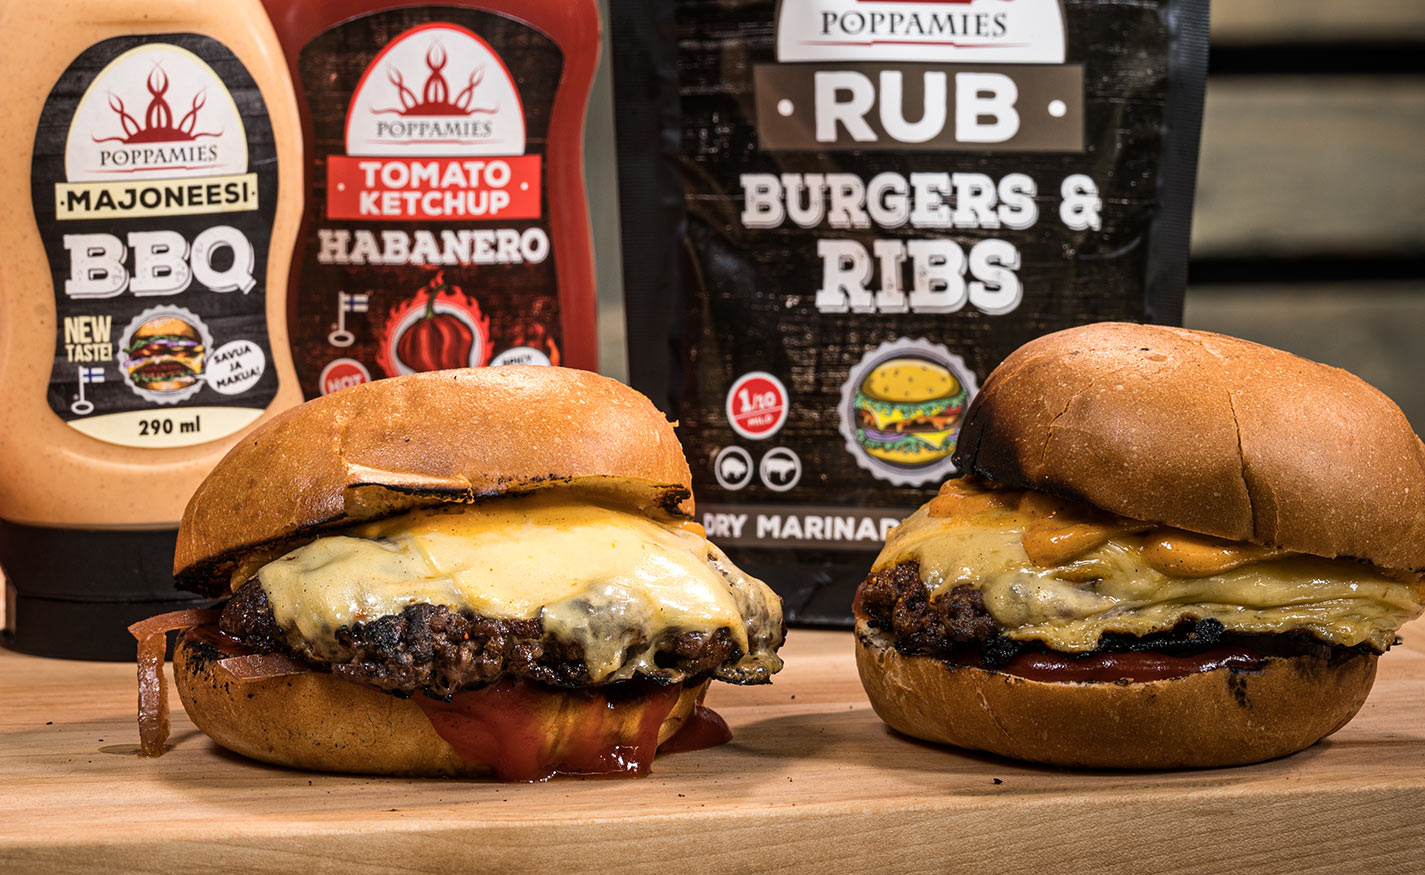 Kaksi smash burgeria, taustalla purkillinen BBQ majoneesia ja Habanero ketsuppia, sekä Burgers & Ribs RUB pussi